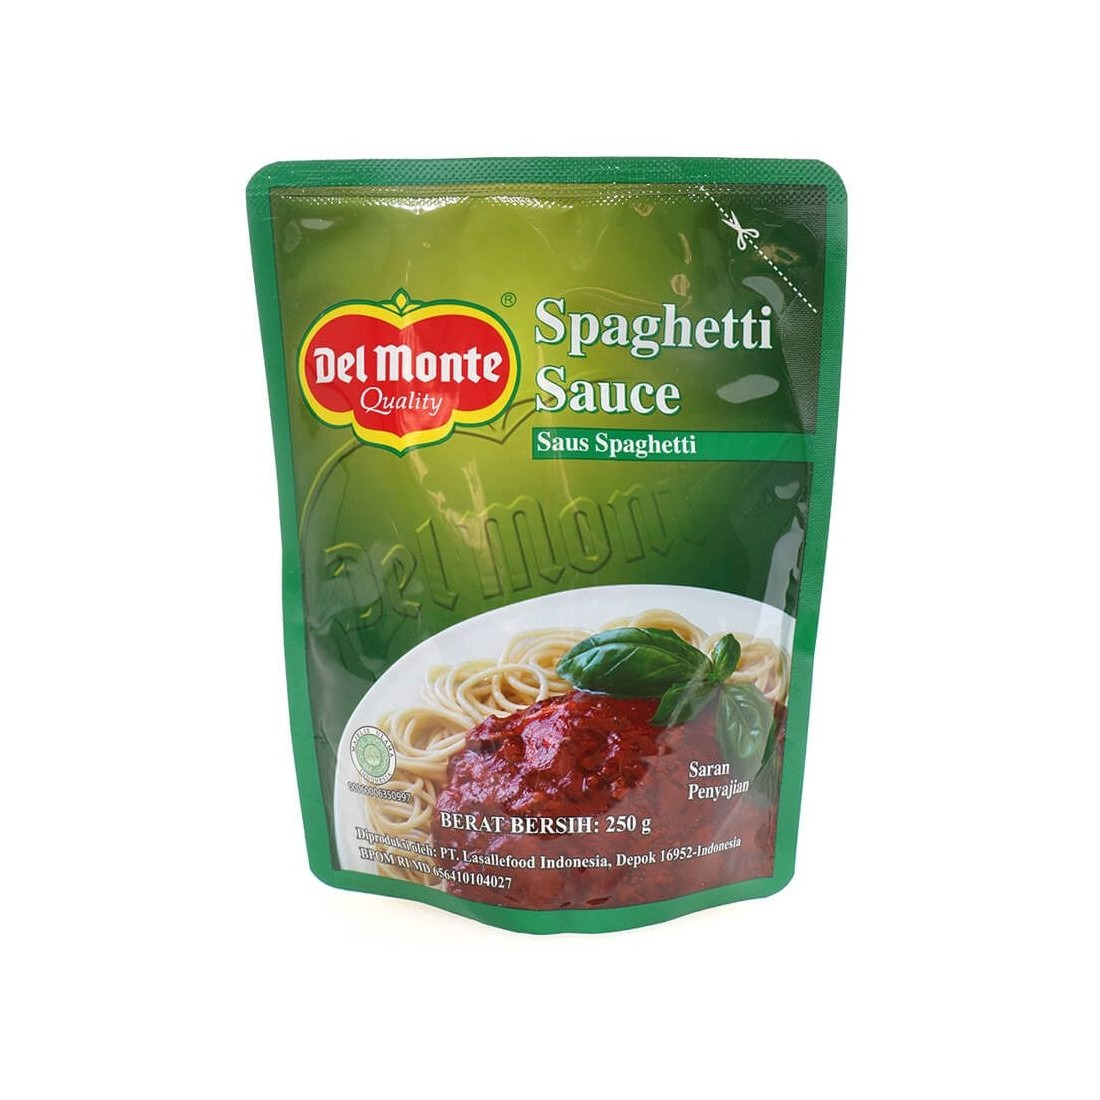 Delmonte 250G Spaghetti Sauce